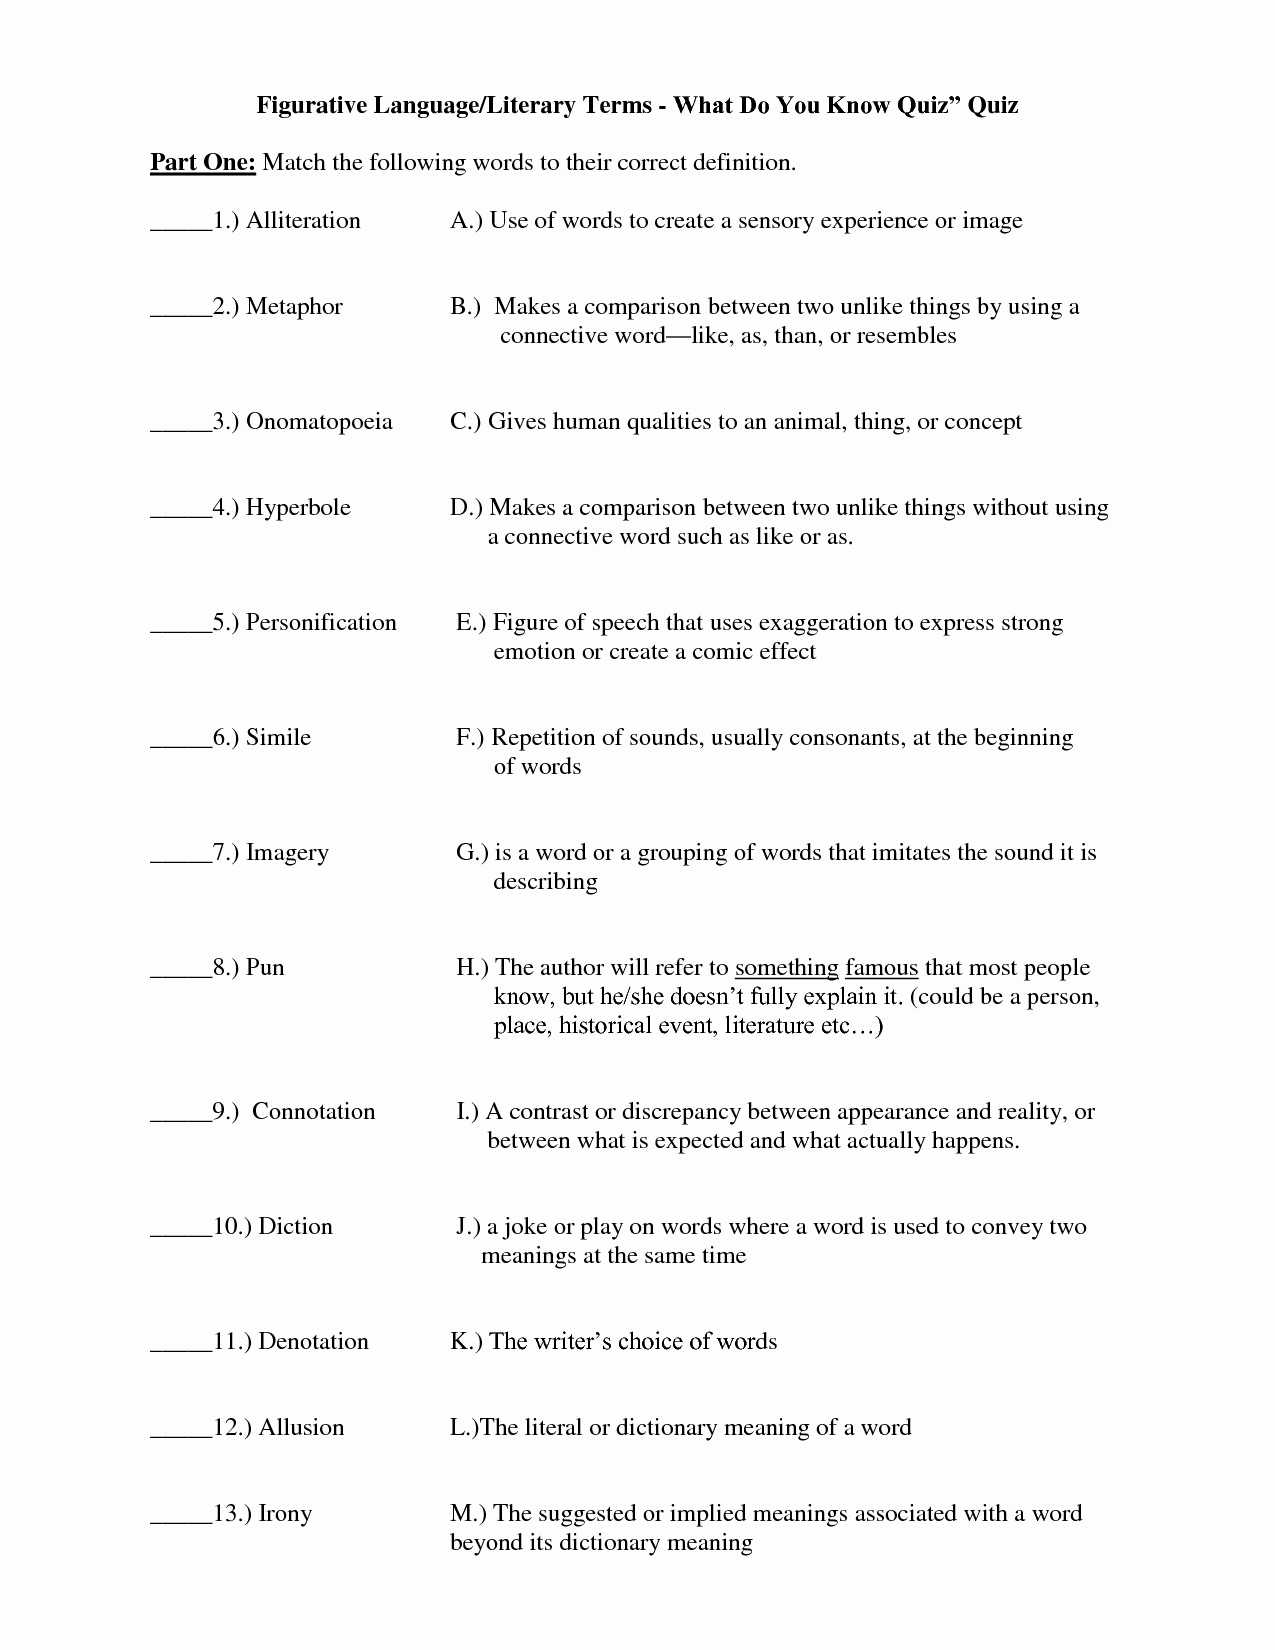 Identifying Irony Worksheet Answers Along with Figurative Language Worksheet Pdf Choice Image Worksheet for Kids